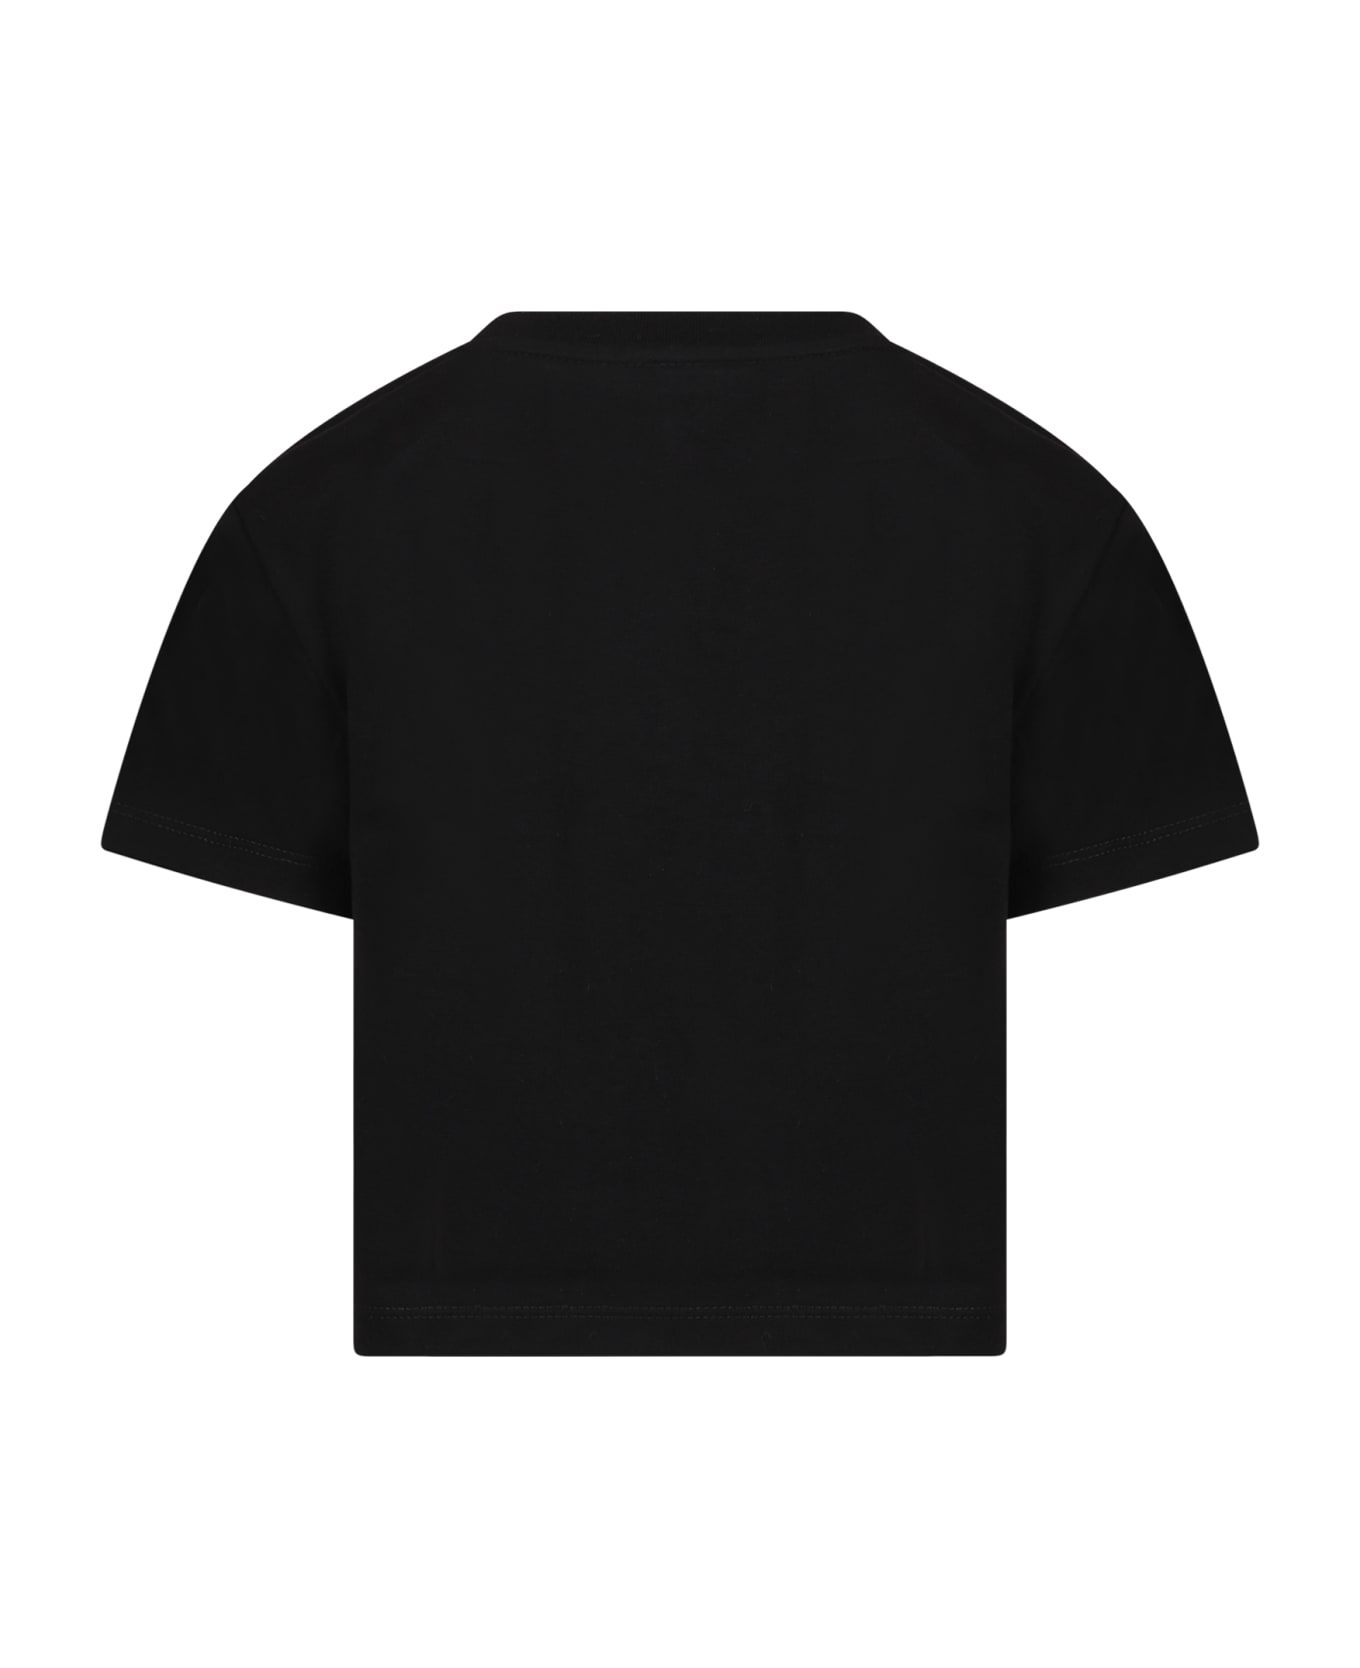 Nike Black T-shirt For Girl With Light Blue Logo - Black